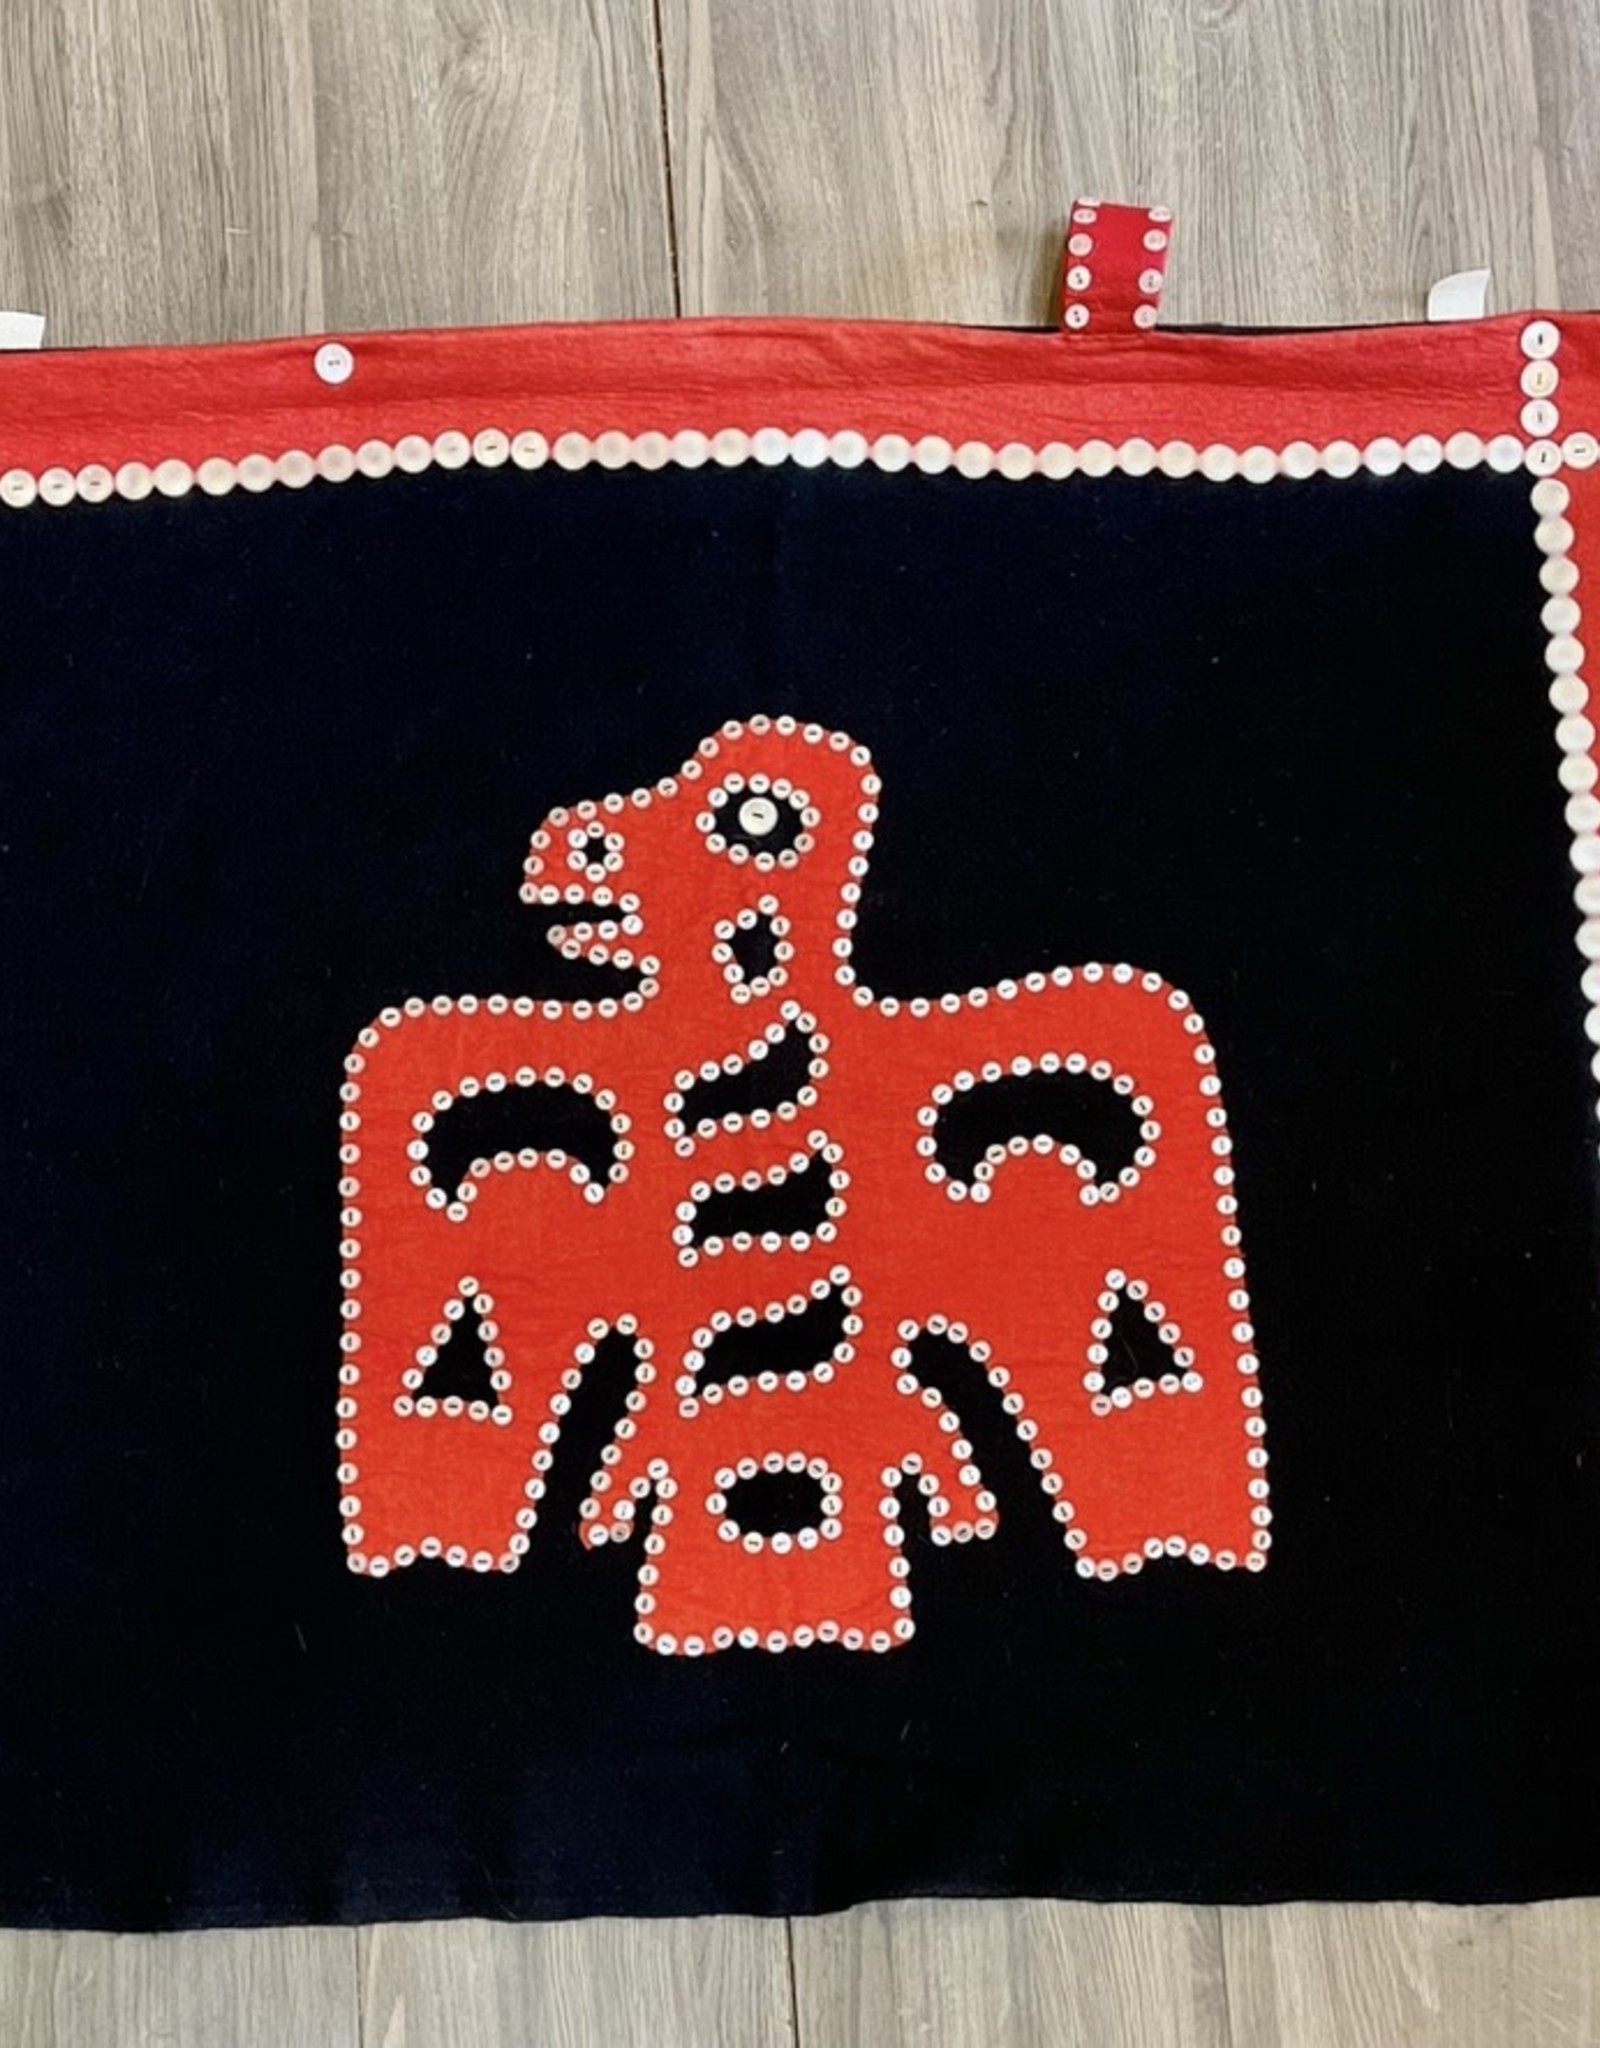 Aboriginal - Button Blanket or Shawl